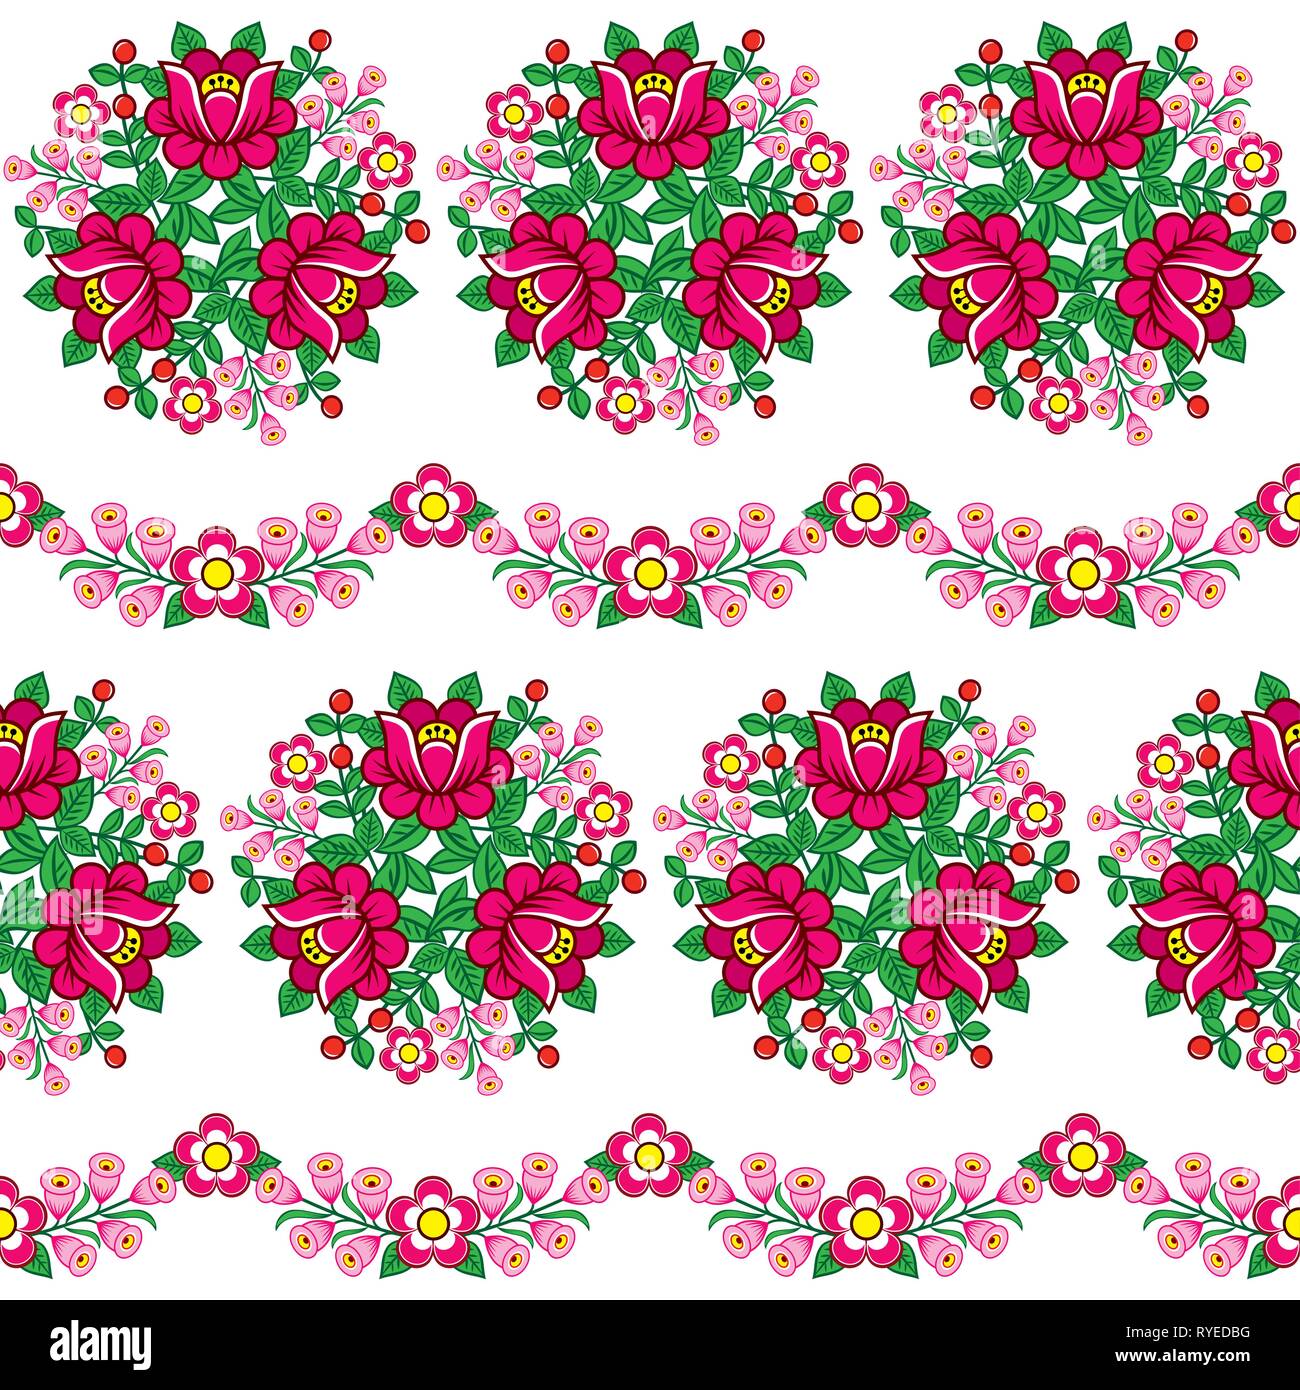 Seamless floral polacco di arte popolare modello di vettore, carino ornamenti tradizionali con fiori da Zalipie, Polonia - tessile, wallpaper design Illustrazione Vettoriale